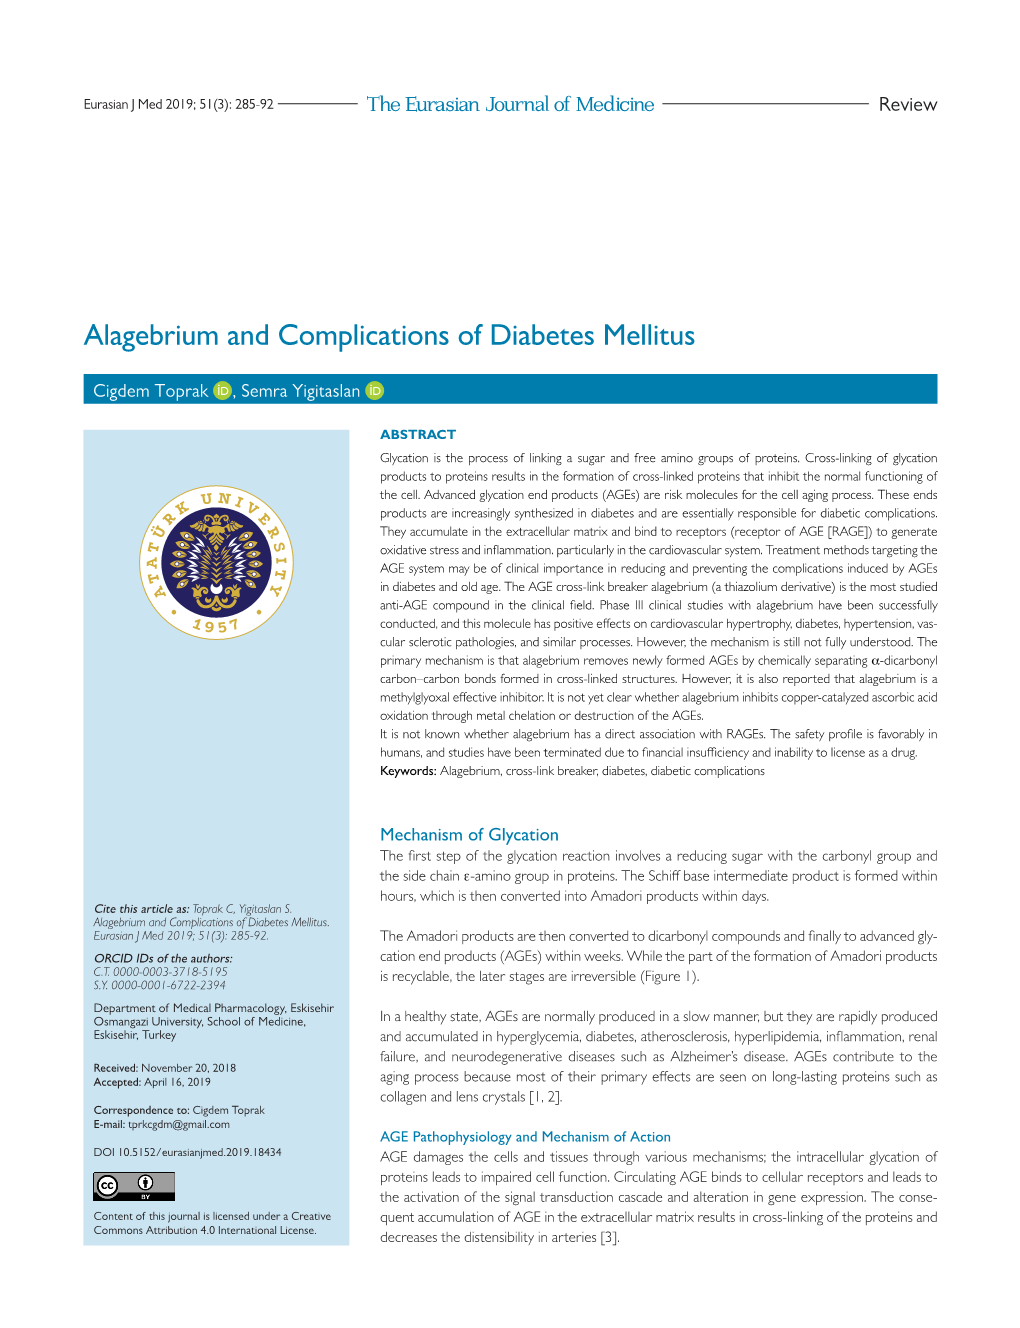 Alagebrium and Complications of Diabetes Mellitus